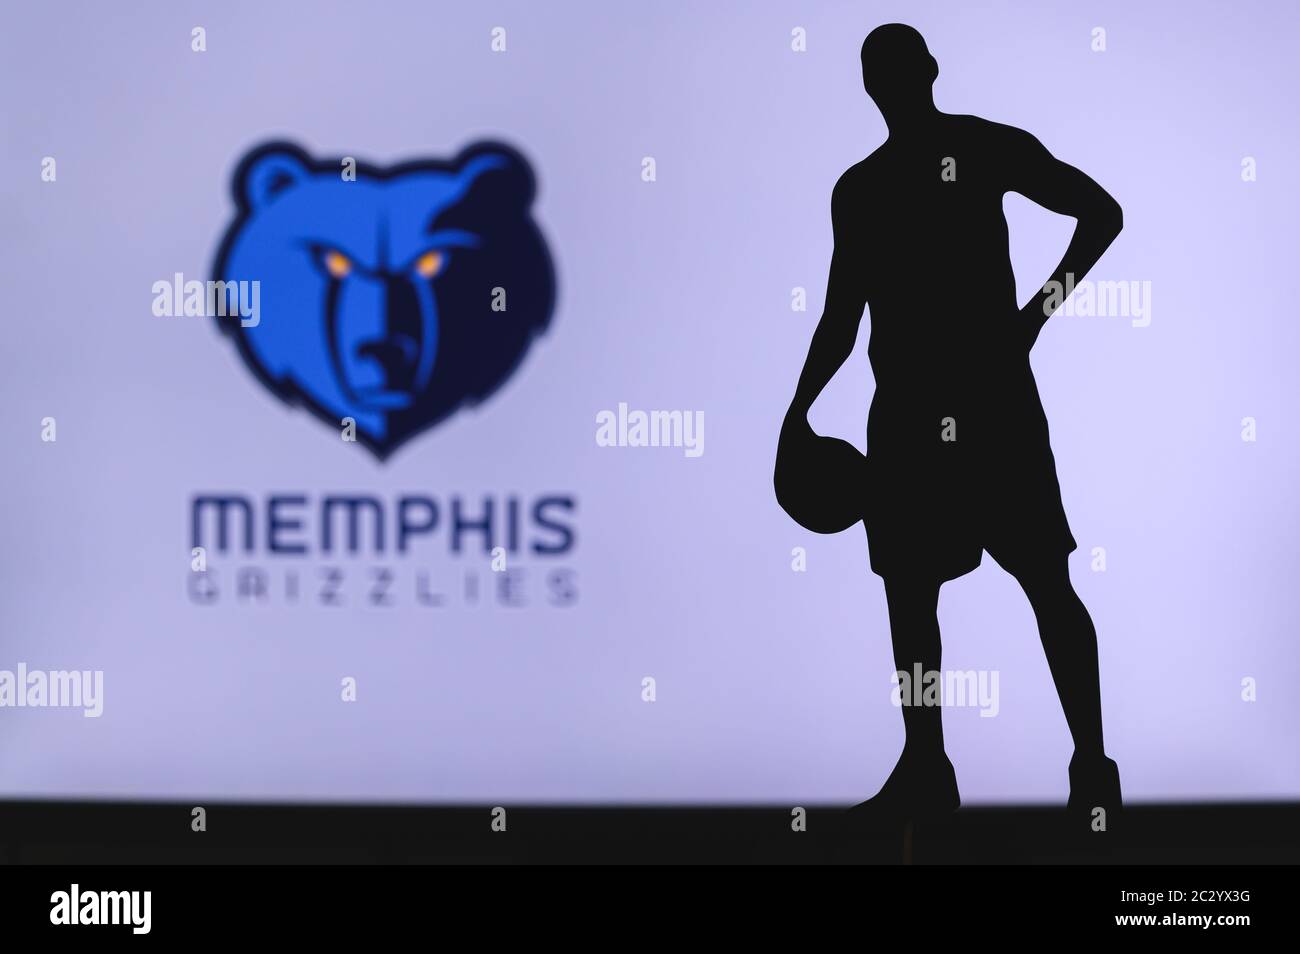 NEW YORK, USA, 18 GIU 2020: Memphis Grizzlies logo di club di basket professionale in lega americana. Silhouette del giocatore di basket in primo piano. SpO Foto Stock